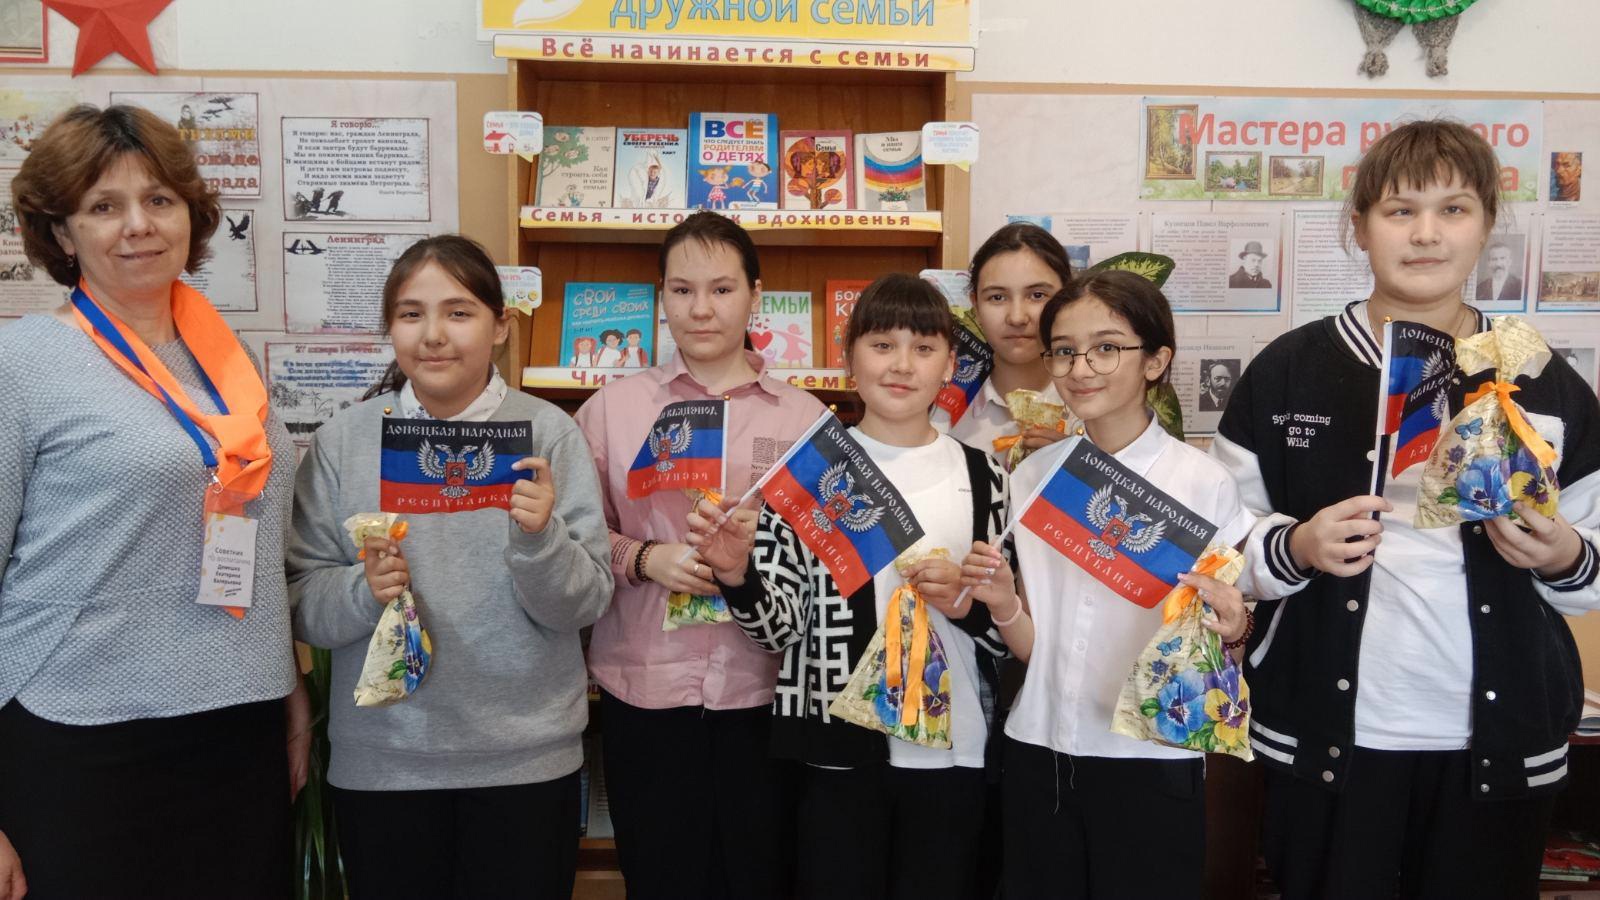 А сегодня наши активисты получили сувениры от учеников, родителей и классного руководителя 2 класса Донецкой школы, которые они приготовили к Пасхальному празднику..